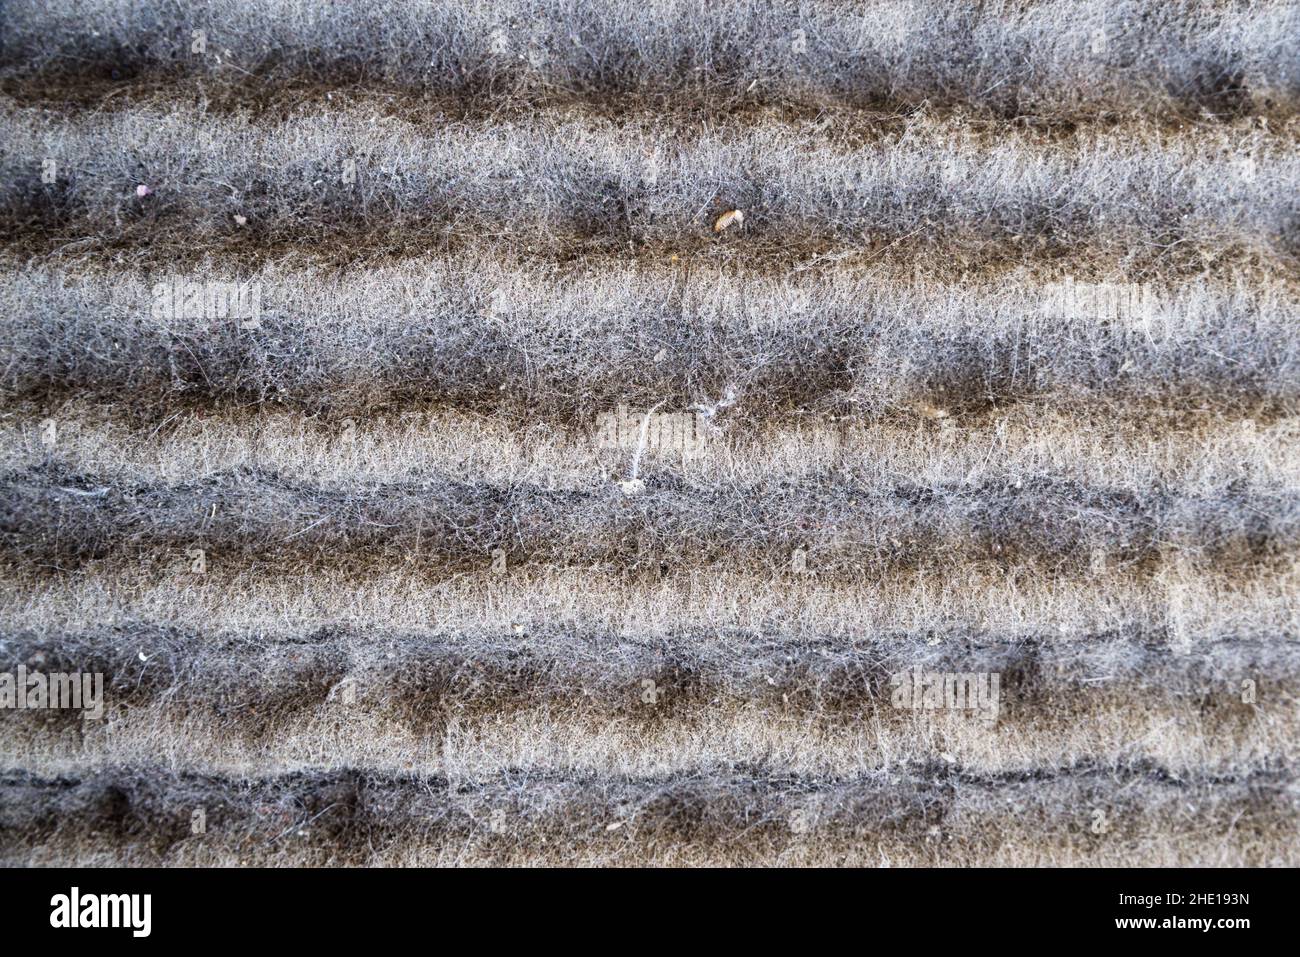 detalle de un filtro de aire muy sucio obstruido con pelo y polvo Foto de stock